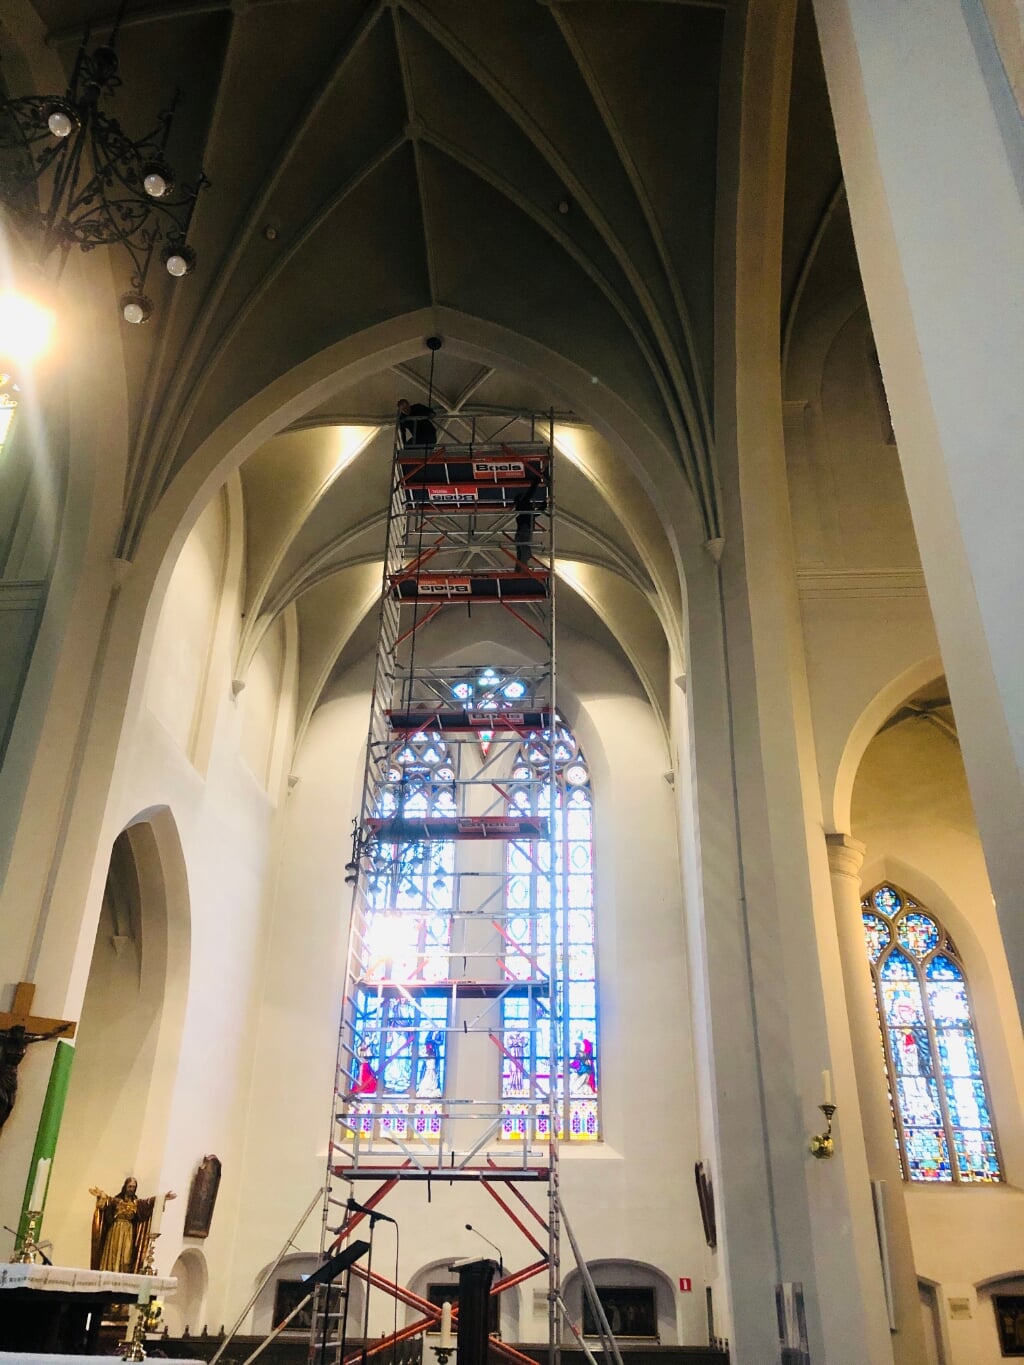 Om de bekabeling aan te brengen in de gewelven werd een achttien meter hoge steiger in de basiliek opgebouwd. (Foto: Fons van Heesch).